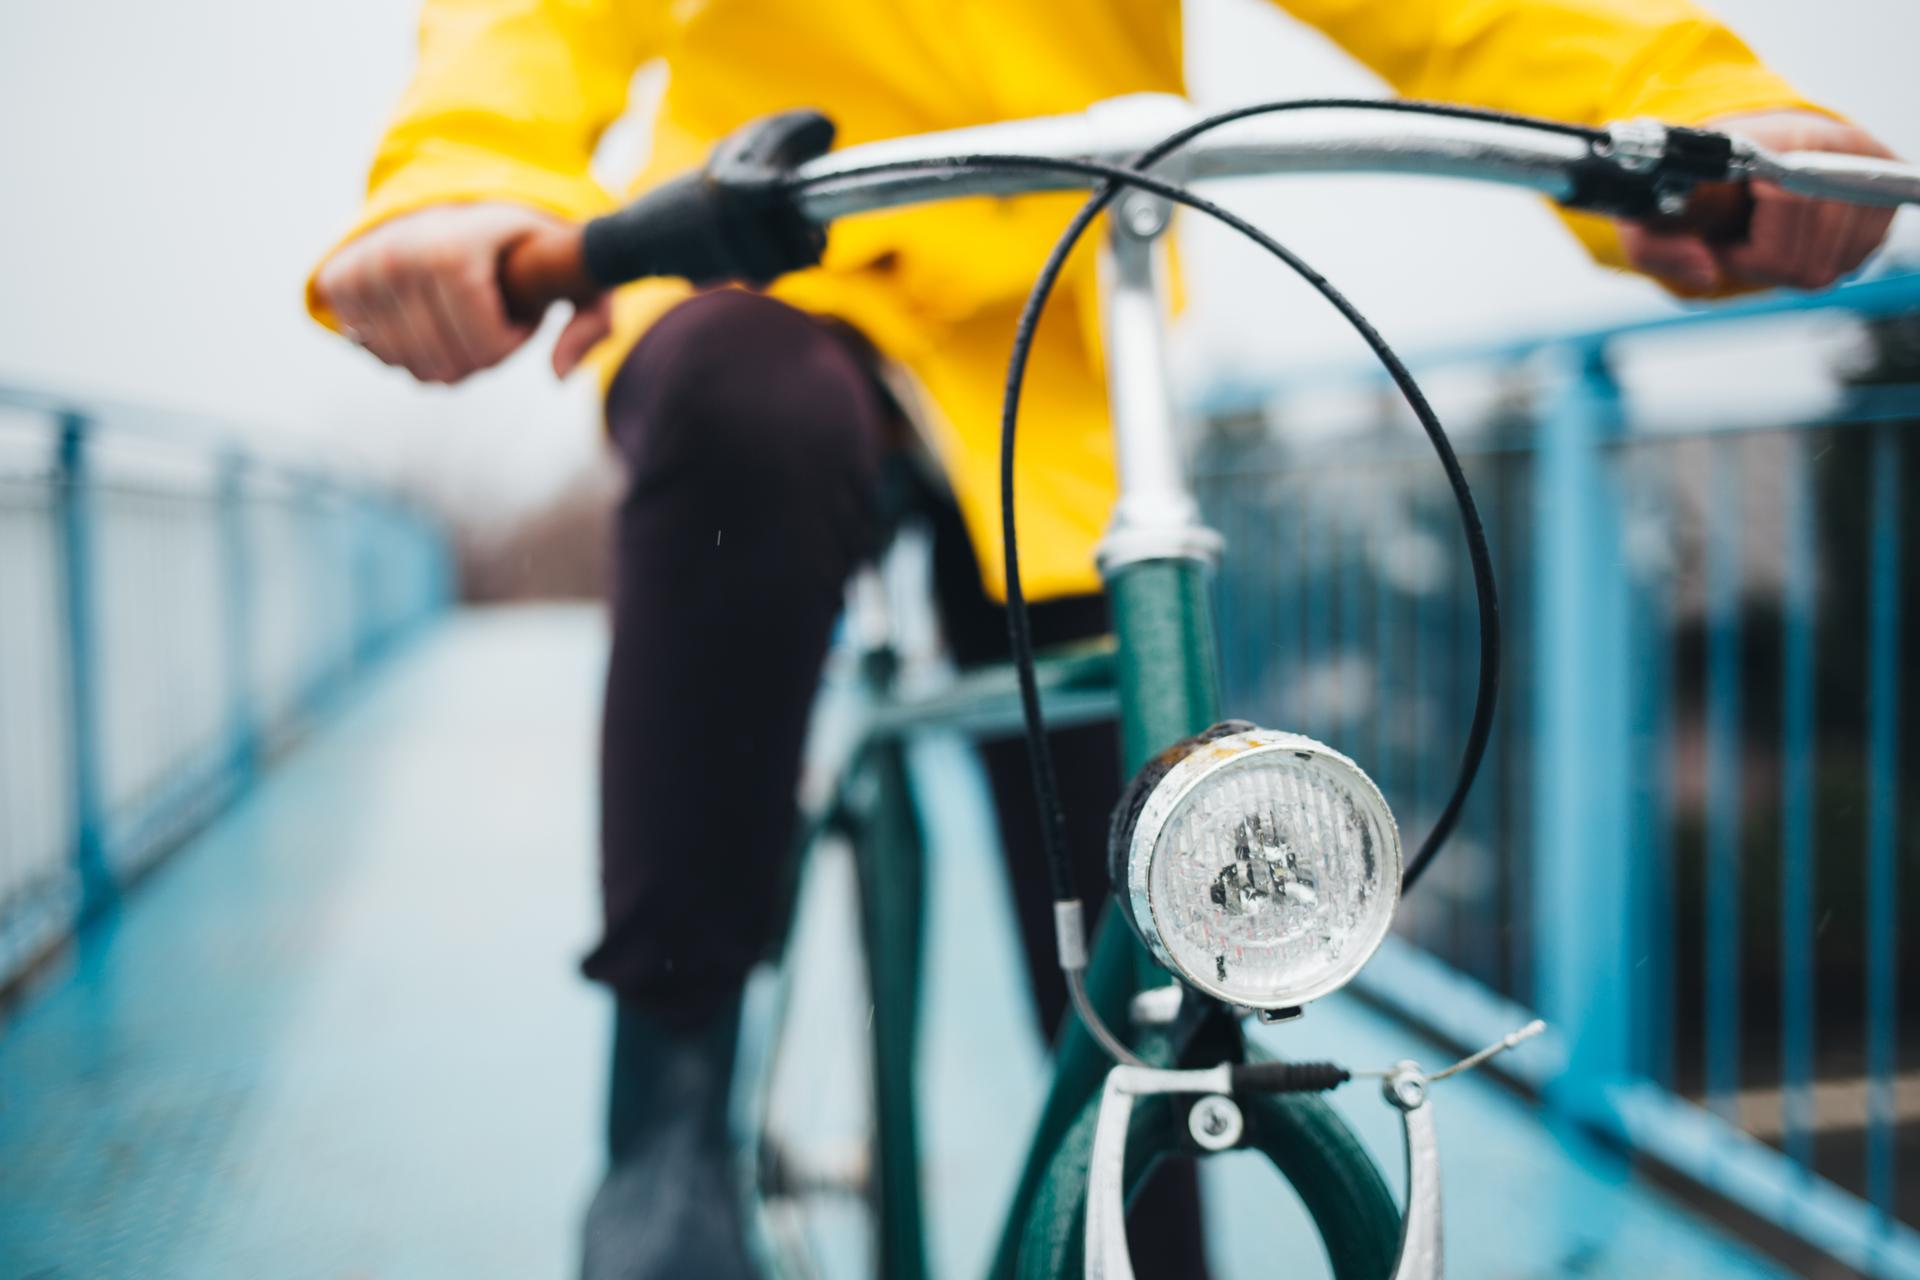 Närbild på en person i gul jacka som cyklar på en gammal cykel.